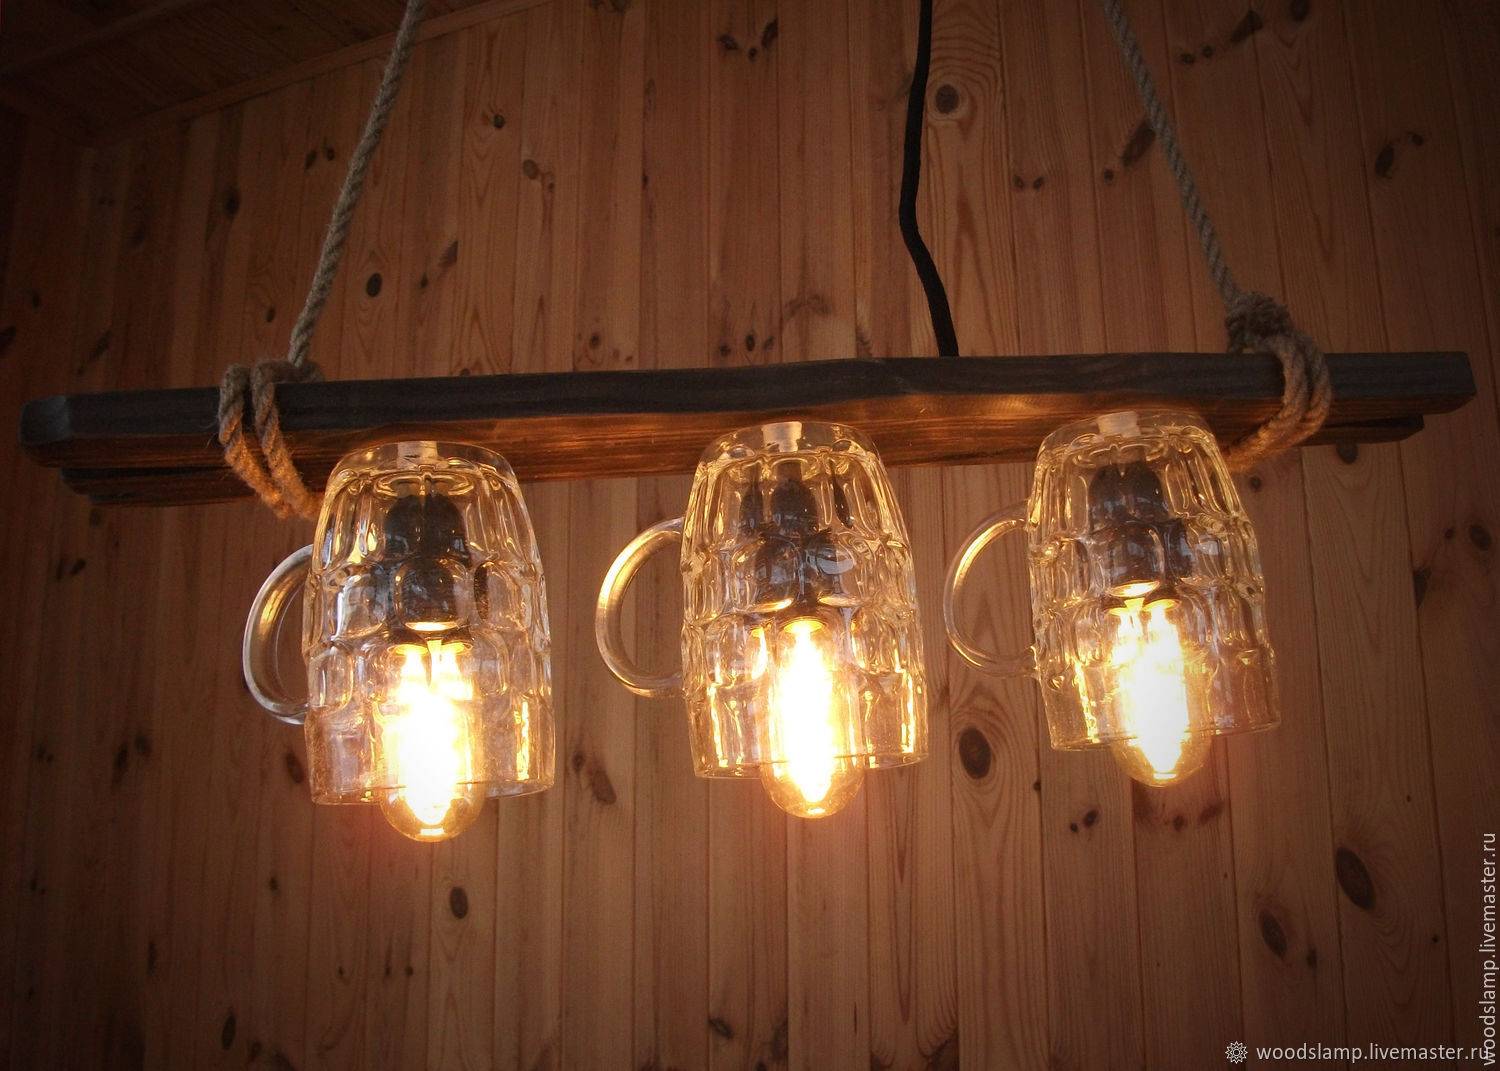 Бра настенные светильники своими руками из дерева. дизайнерские светильники из дерева и фанеры – воплощаем идеи из мастер-класса